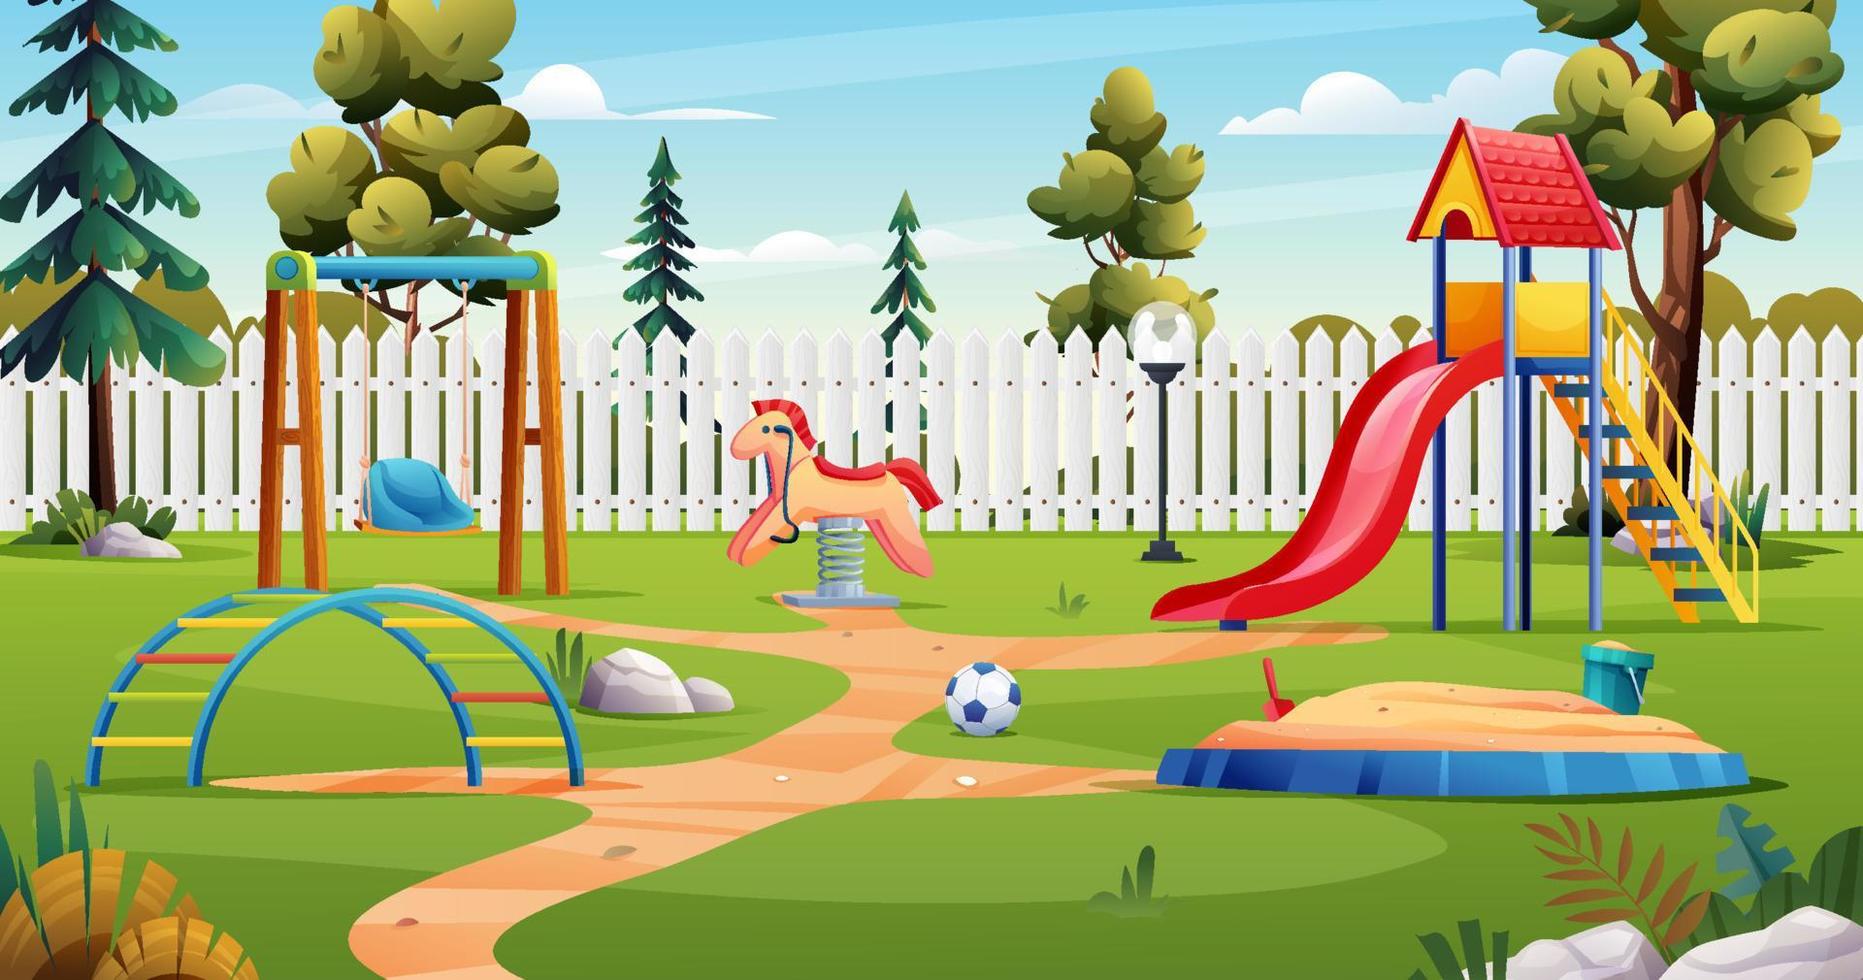 playground infantil com escorregador, balanço, caixa de areia e brinquedos paisagem dos desenhos animados vetor